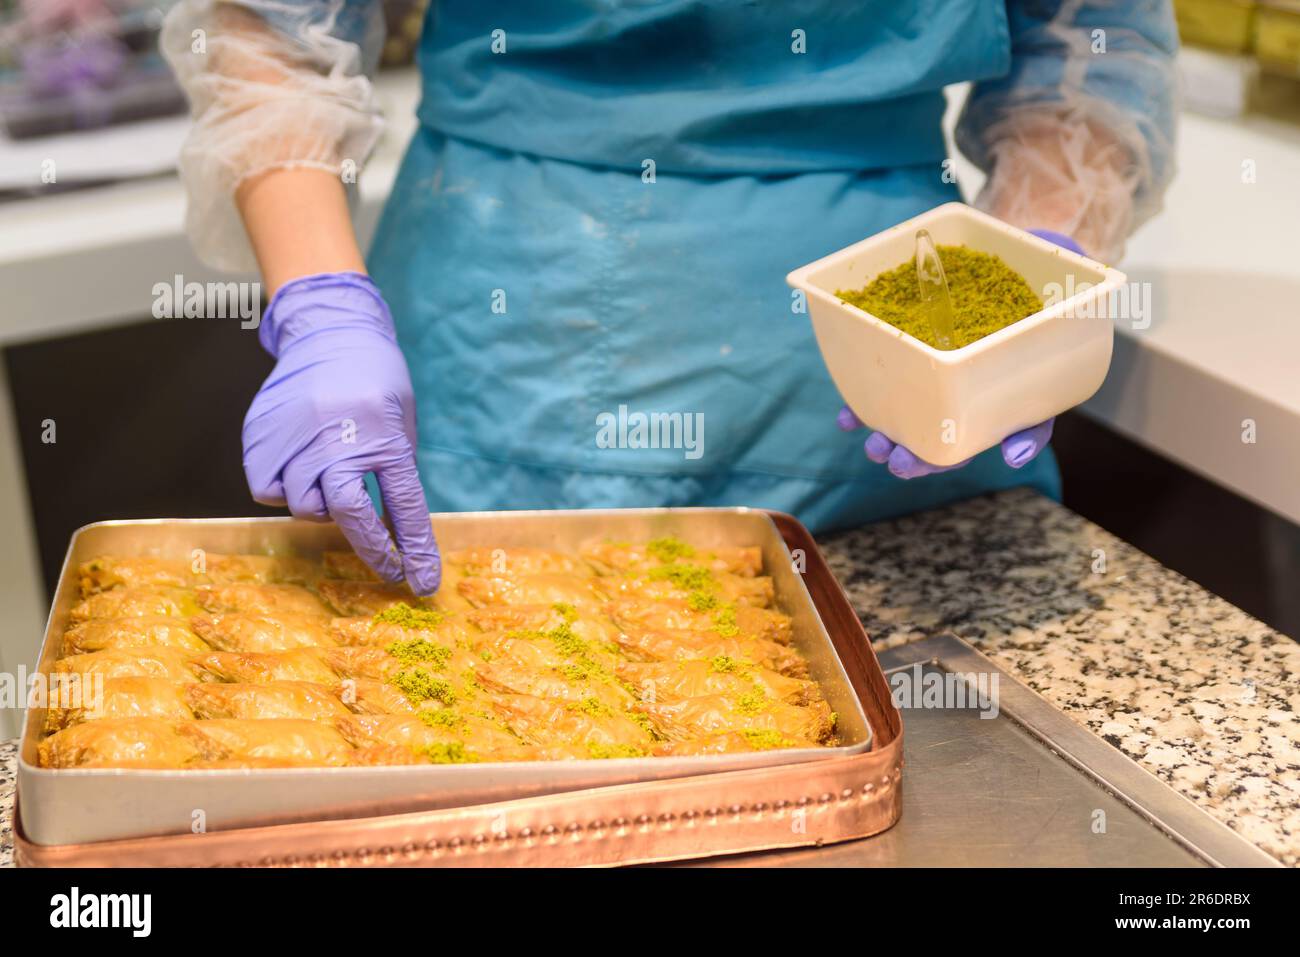 Gros plan des mains préparant des sucreries traditionnelles turques de baklava avec pistache à l'intérieur d'une boulangerie à Istanbul. Fabrication de baklava Banque D'Images